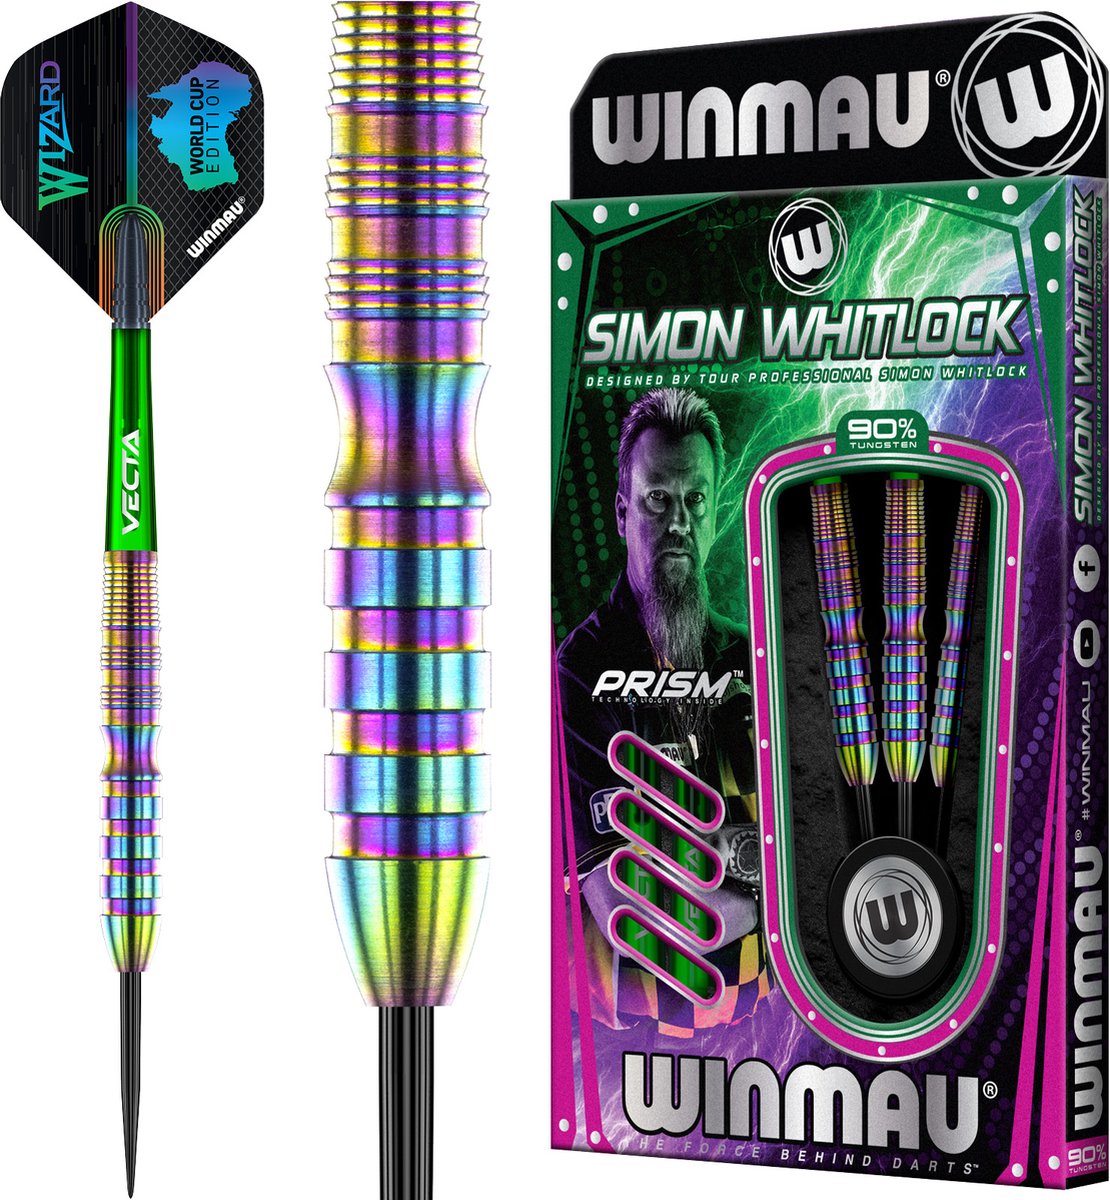 WINMAU - Simon Whitlock Urban World Cup Edition: Steeltip Tungsten Dartpijlen Professioneel - 24g - Winmau